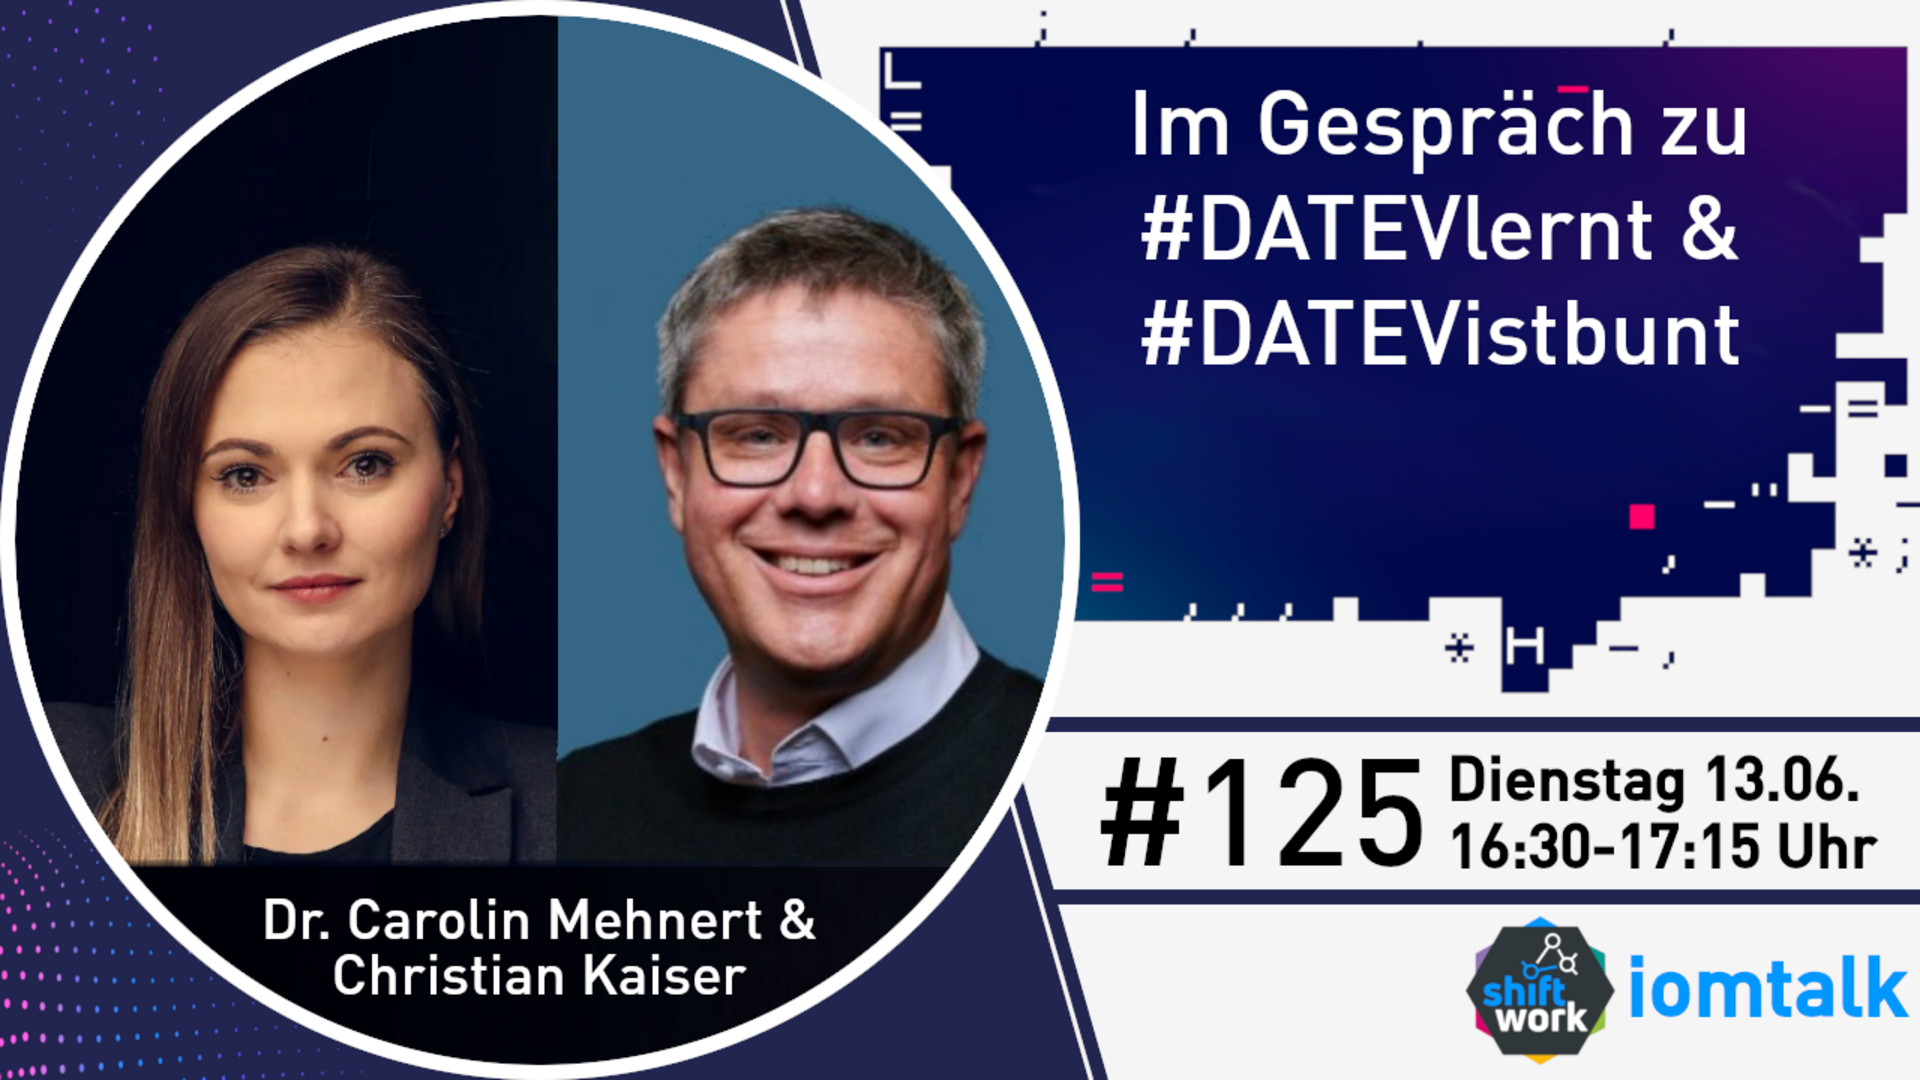 Im Gespräch mit Carolin Mehnert & Christian Kaiser zu #DATEVlernt und #DATEVistbunt